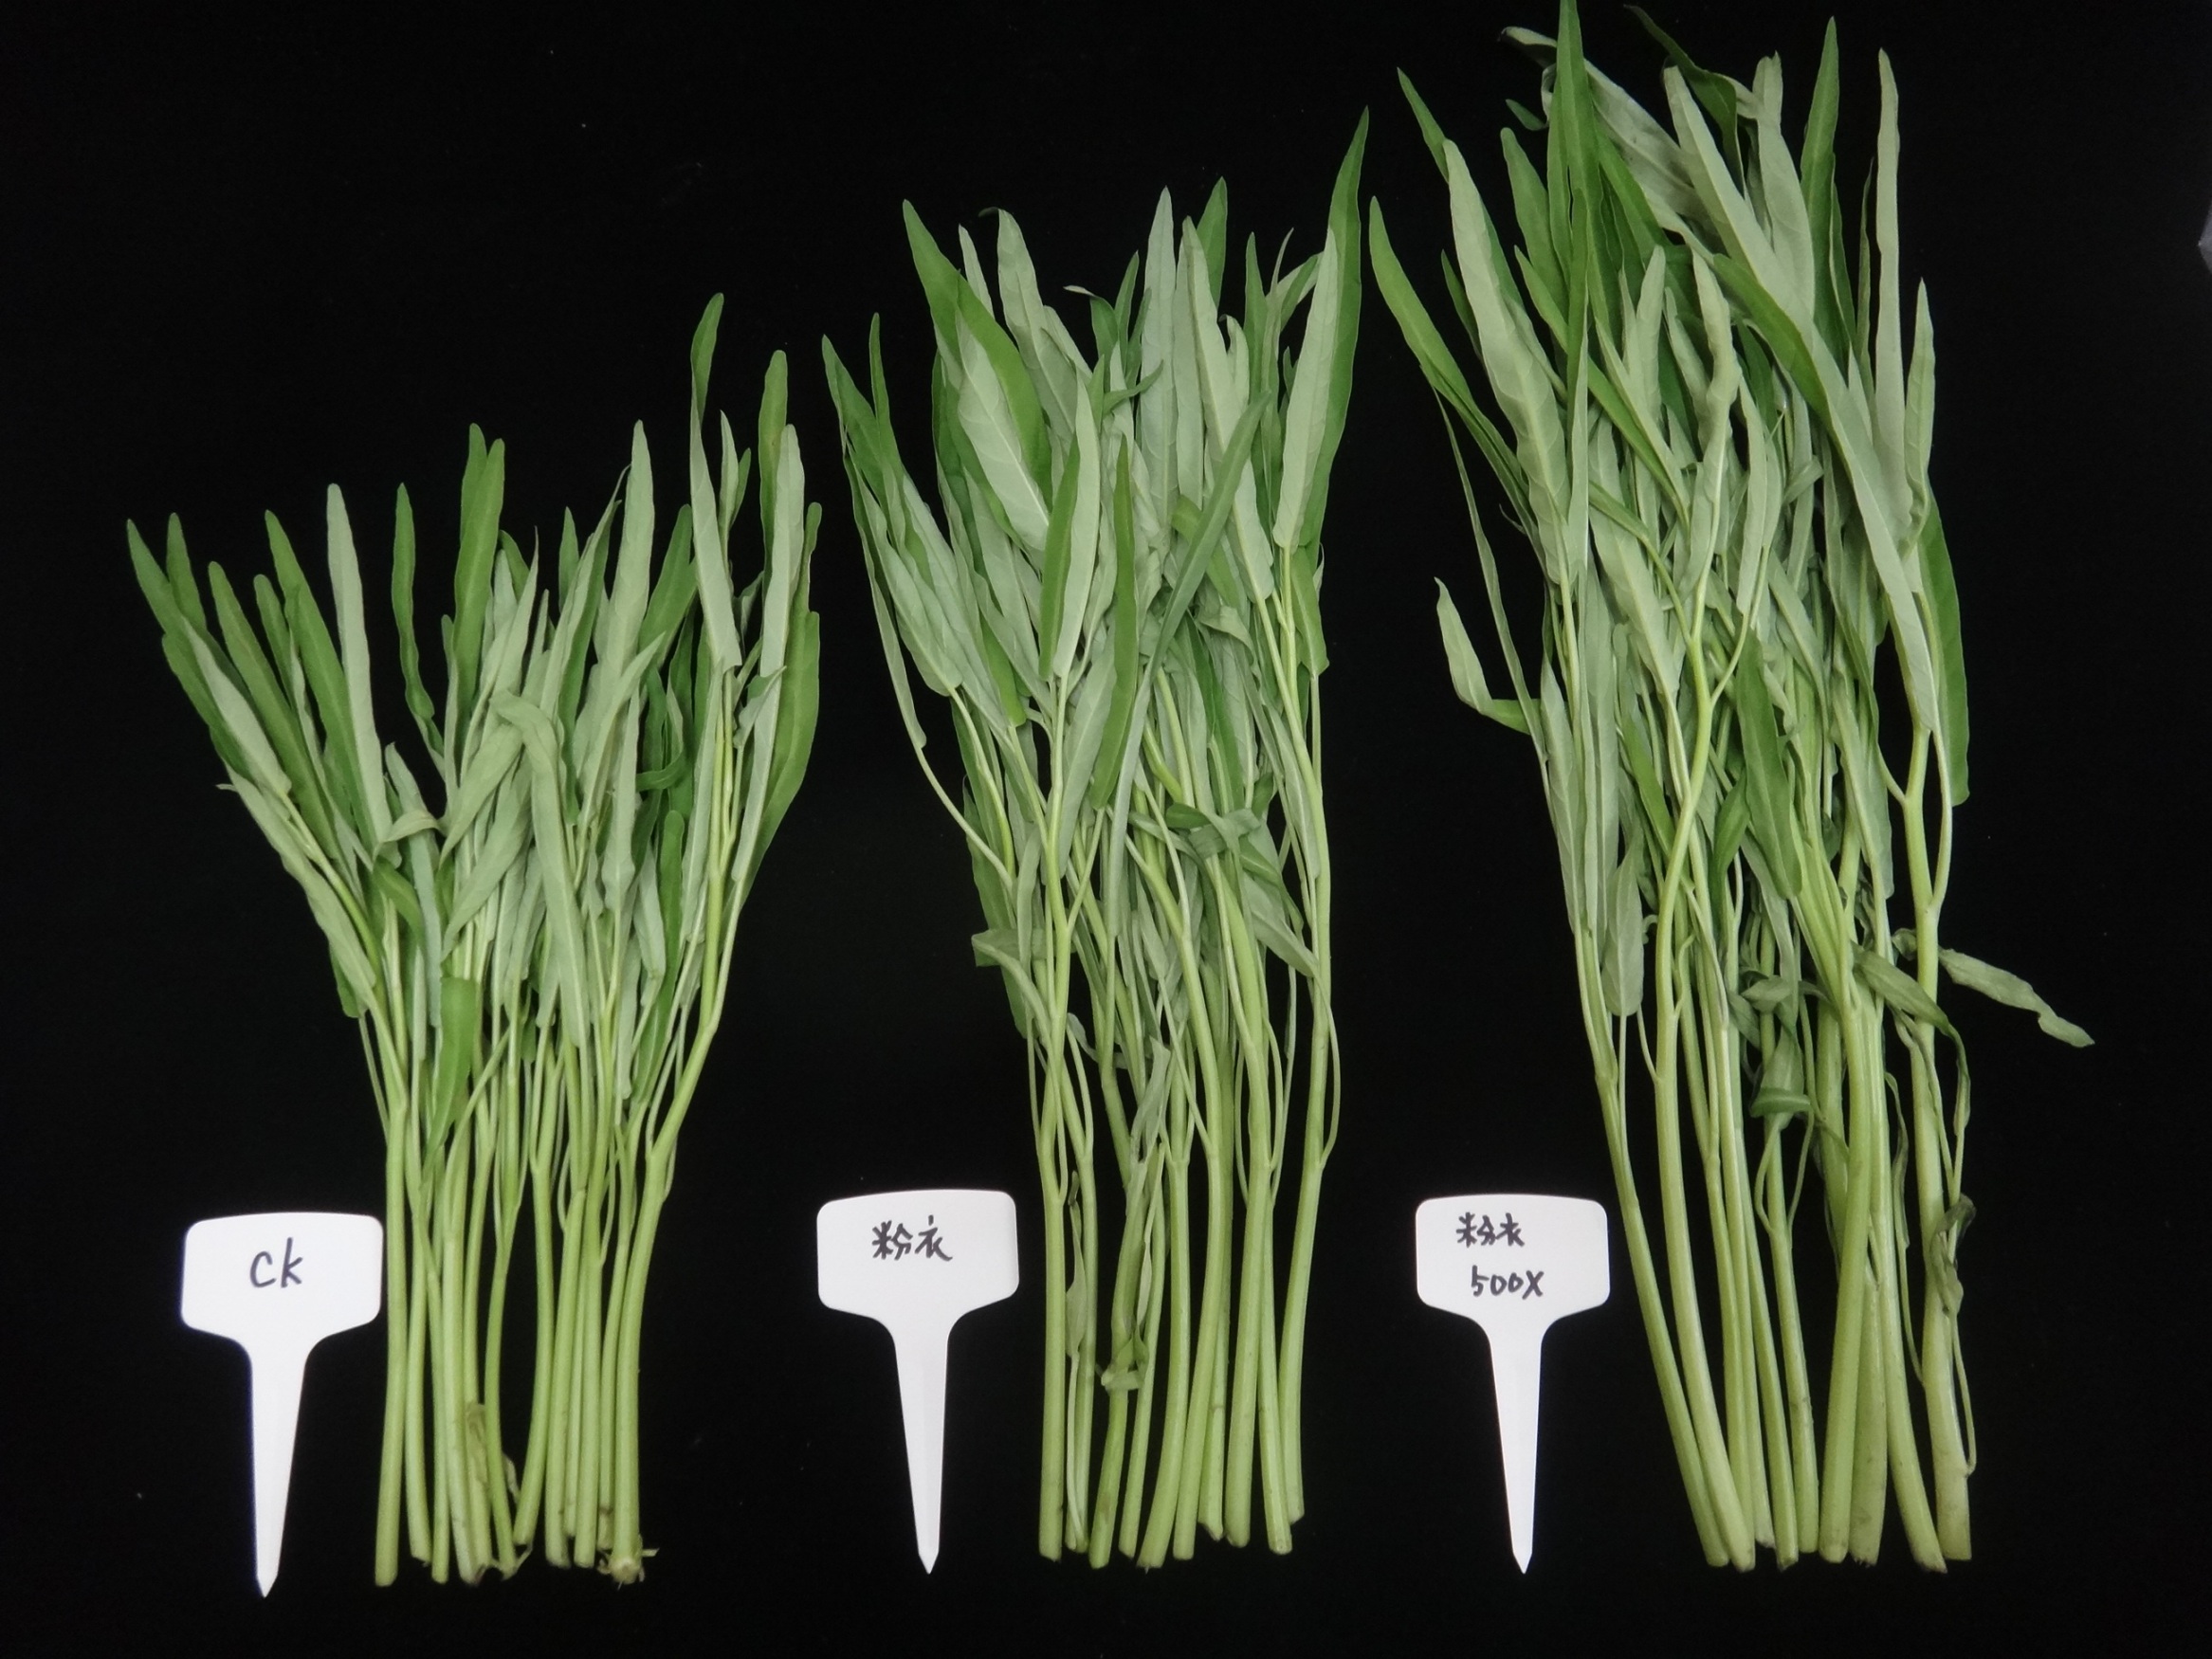 液化澱粉芽孢桿菌 Tcba05 可促進蕹菜生長及提高 產量 ( 左：對照組、中：種子混拌 Tcba05 、右：土壤澆灌 Tcba05) 